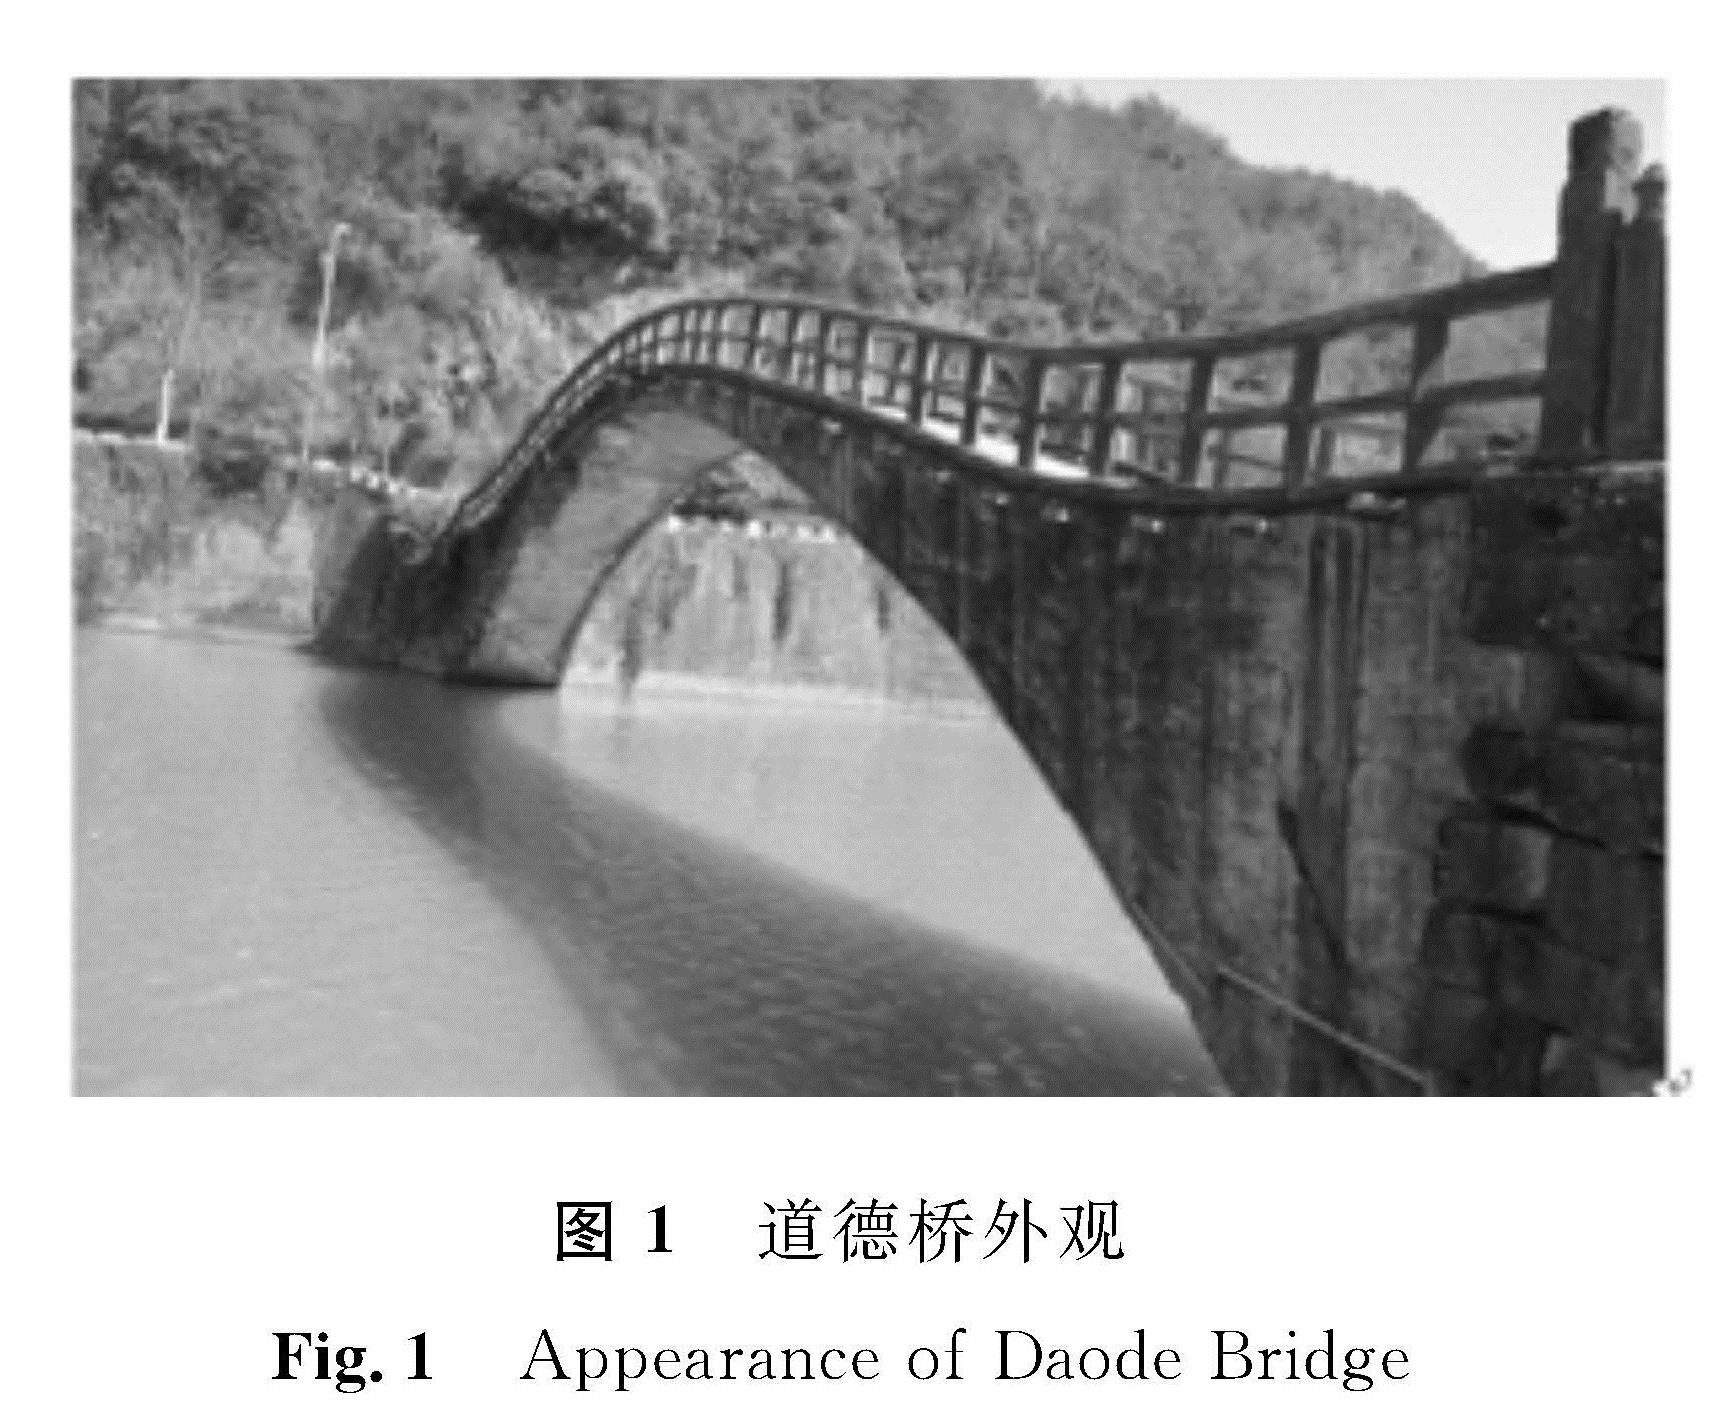 图1 道德桥外观<br/>Fig.1 Appearance of Daode Bridge